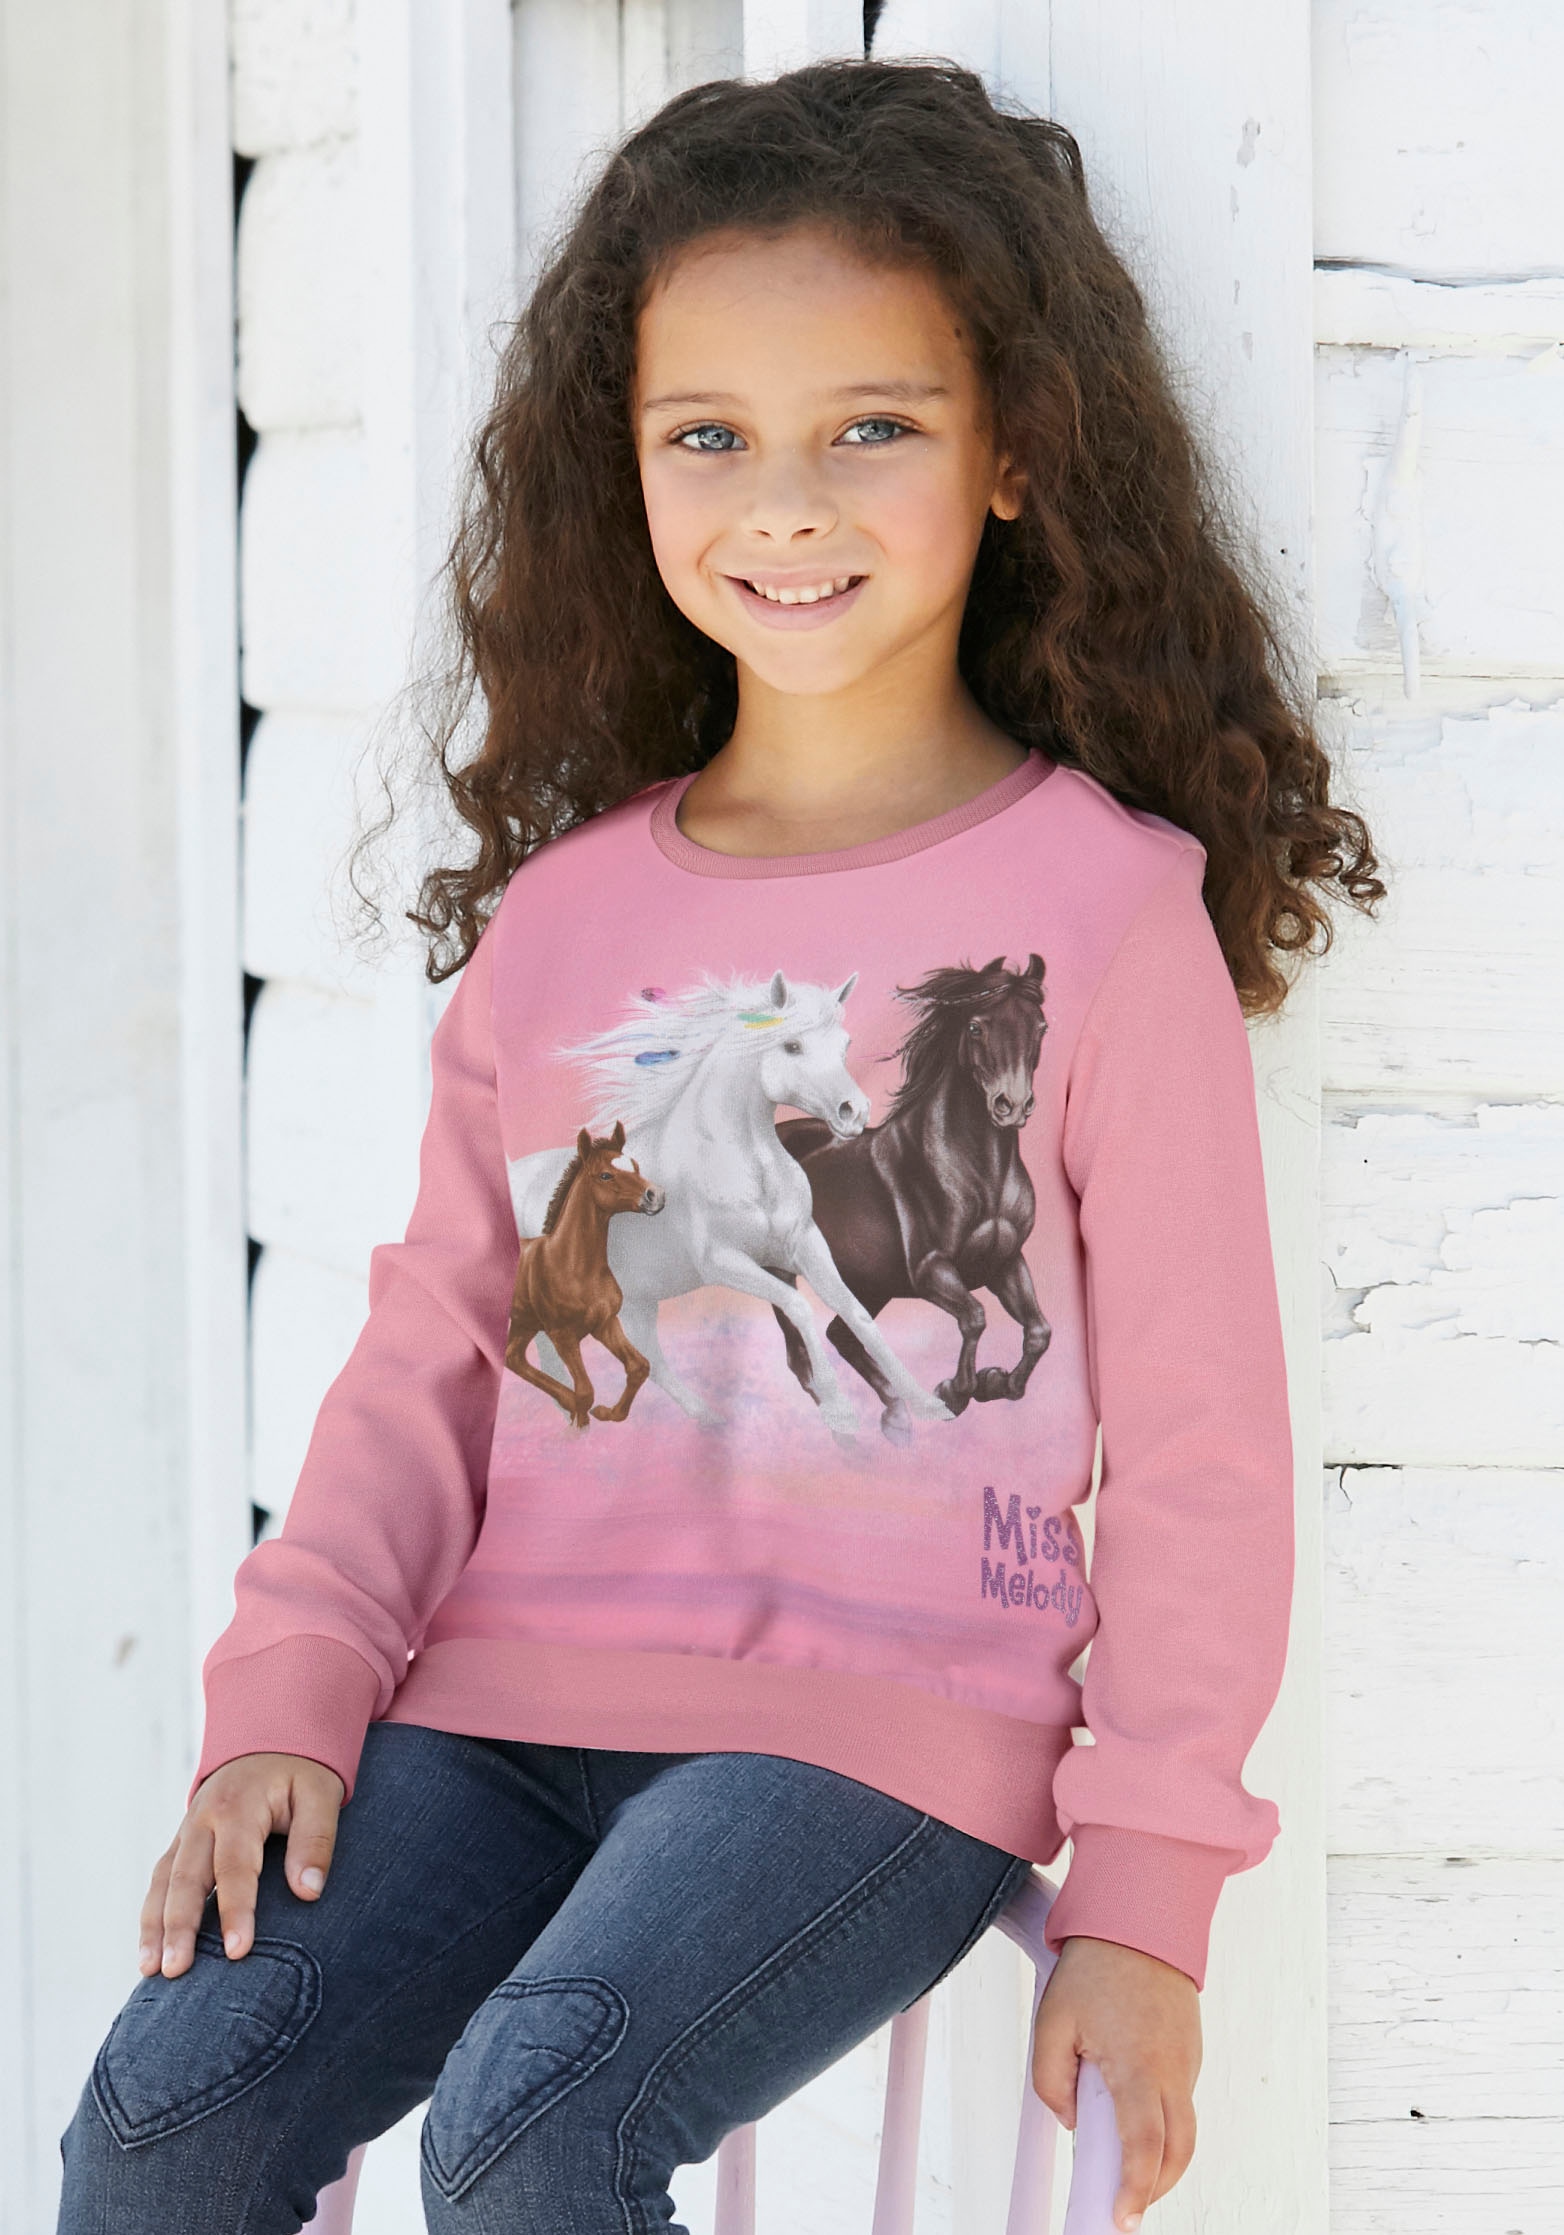 BAUR Melody Pferdefreunde online Miss bestellen für Longsweatshirt, |